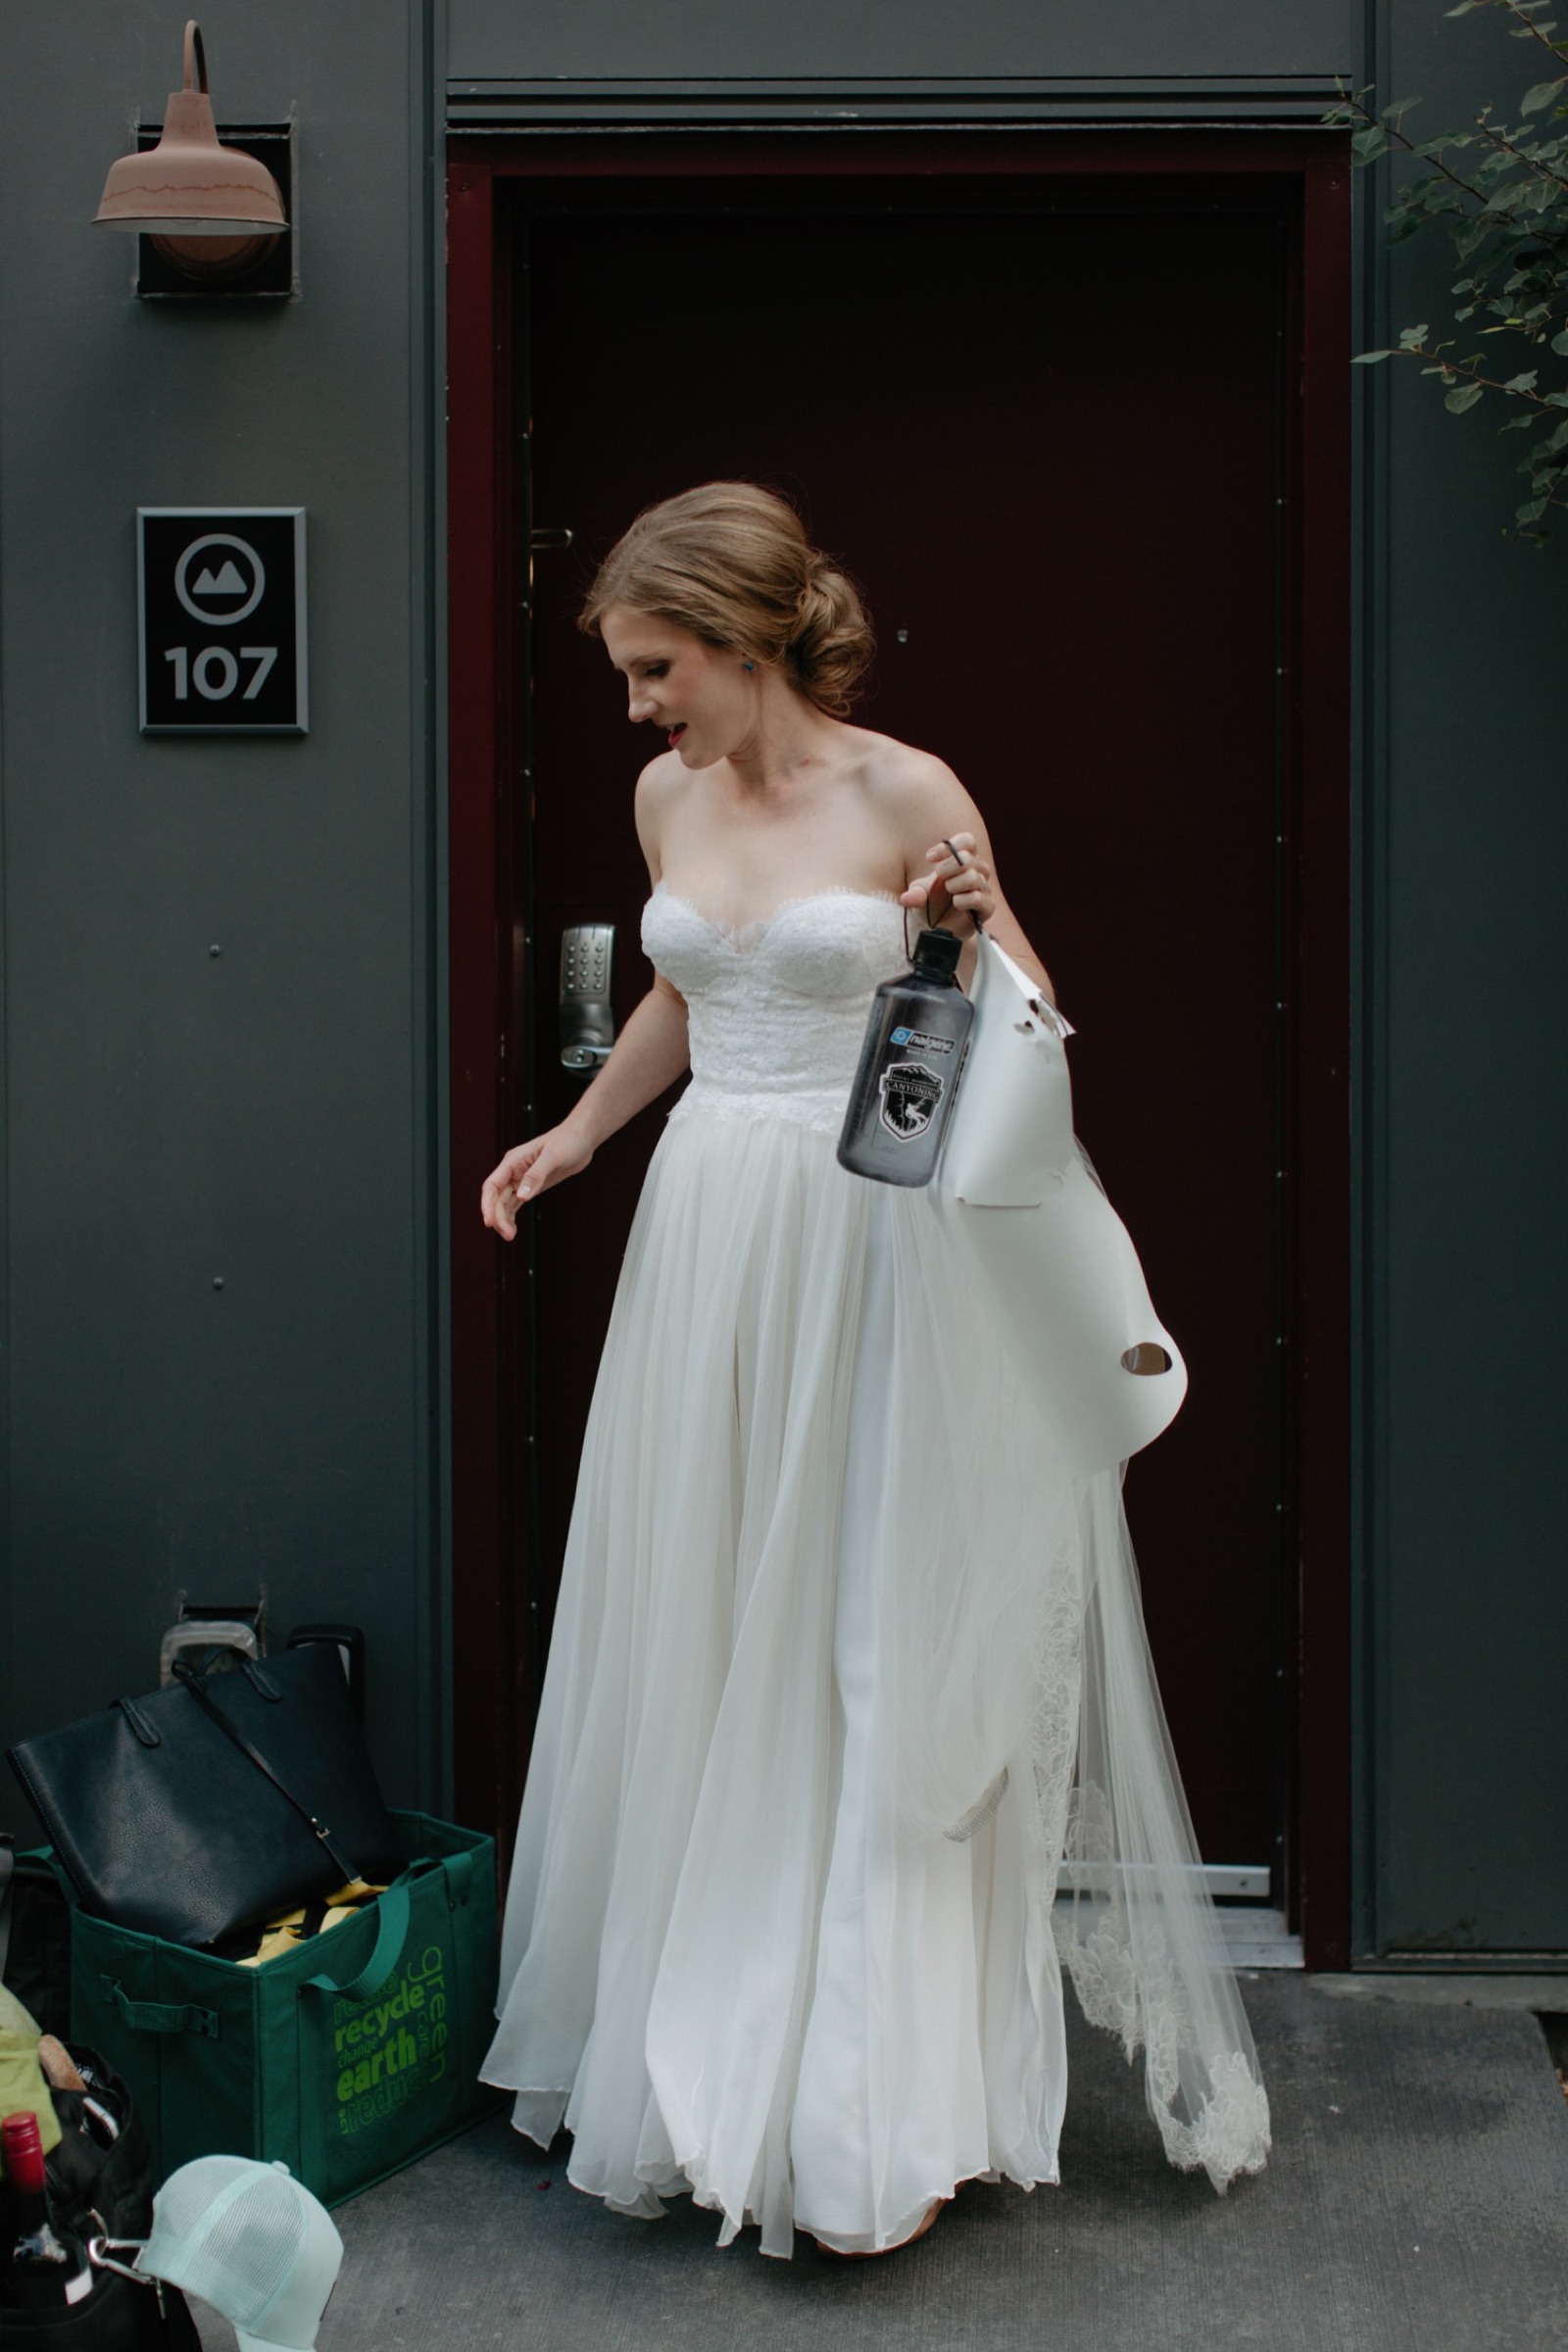 Bride leaving basecamp holding nalgene bottle